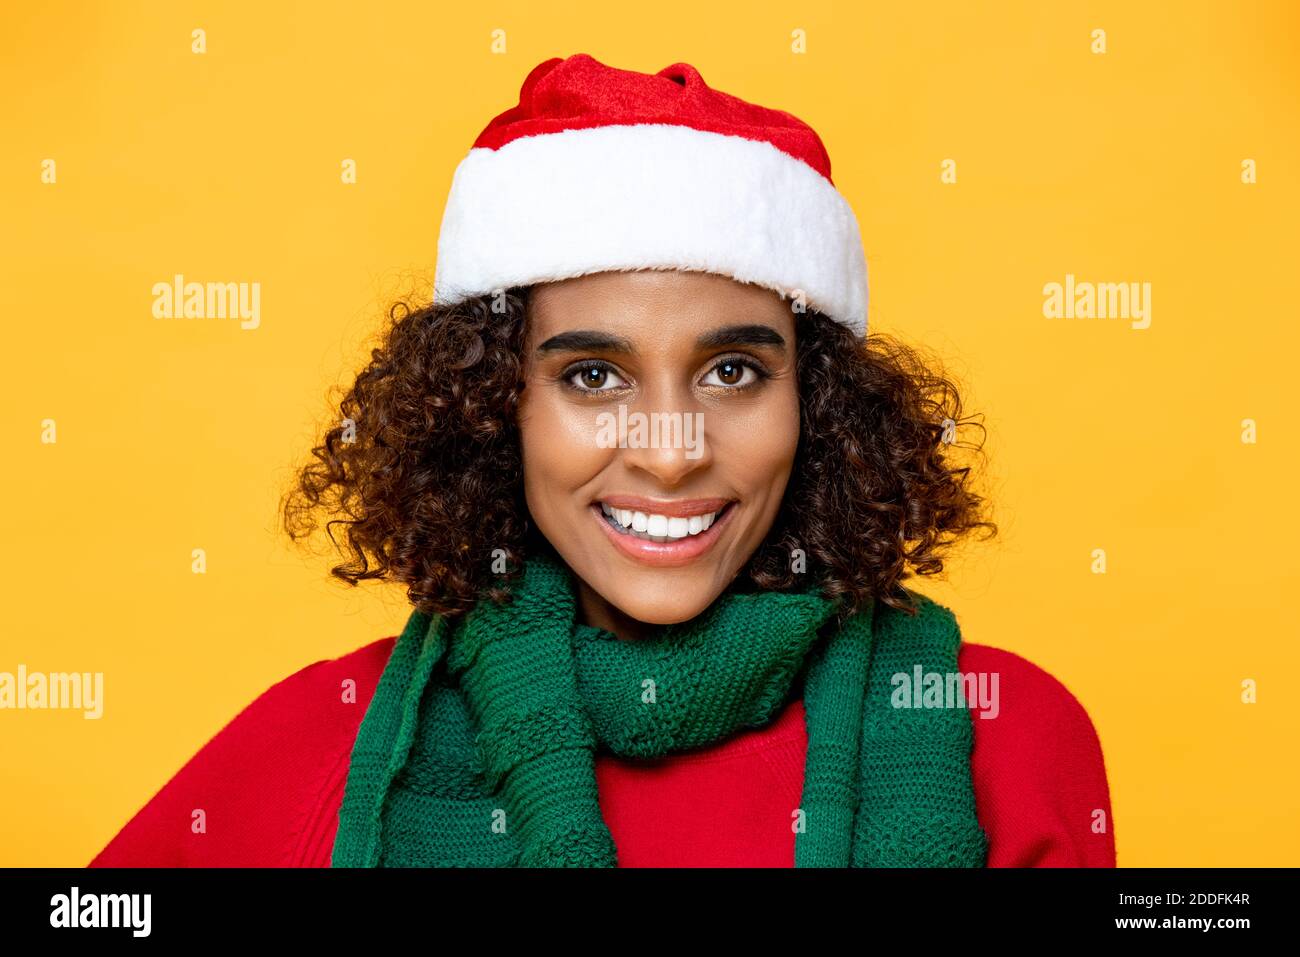 Nahaufnahme Porträt der hübschen Frau in Weihnachtskleidung lächelnd Und Blick auf die Kamera auf isolierten bunten gelben Hintergrund Stockfoto